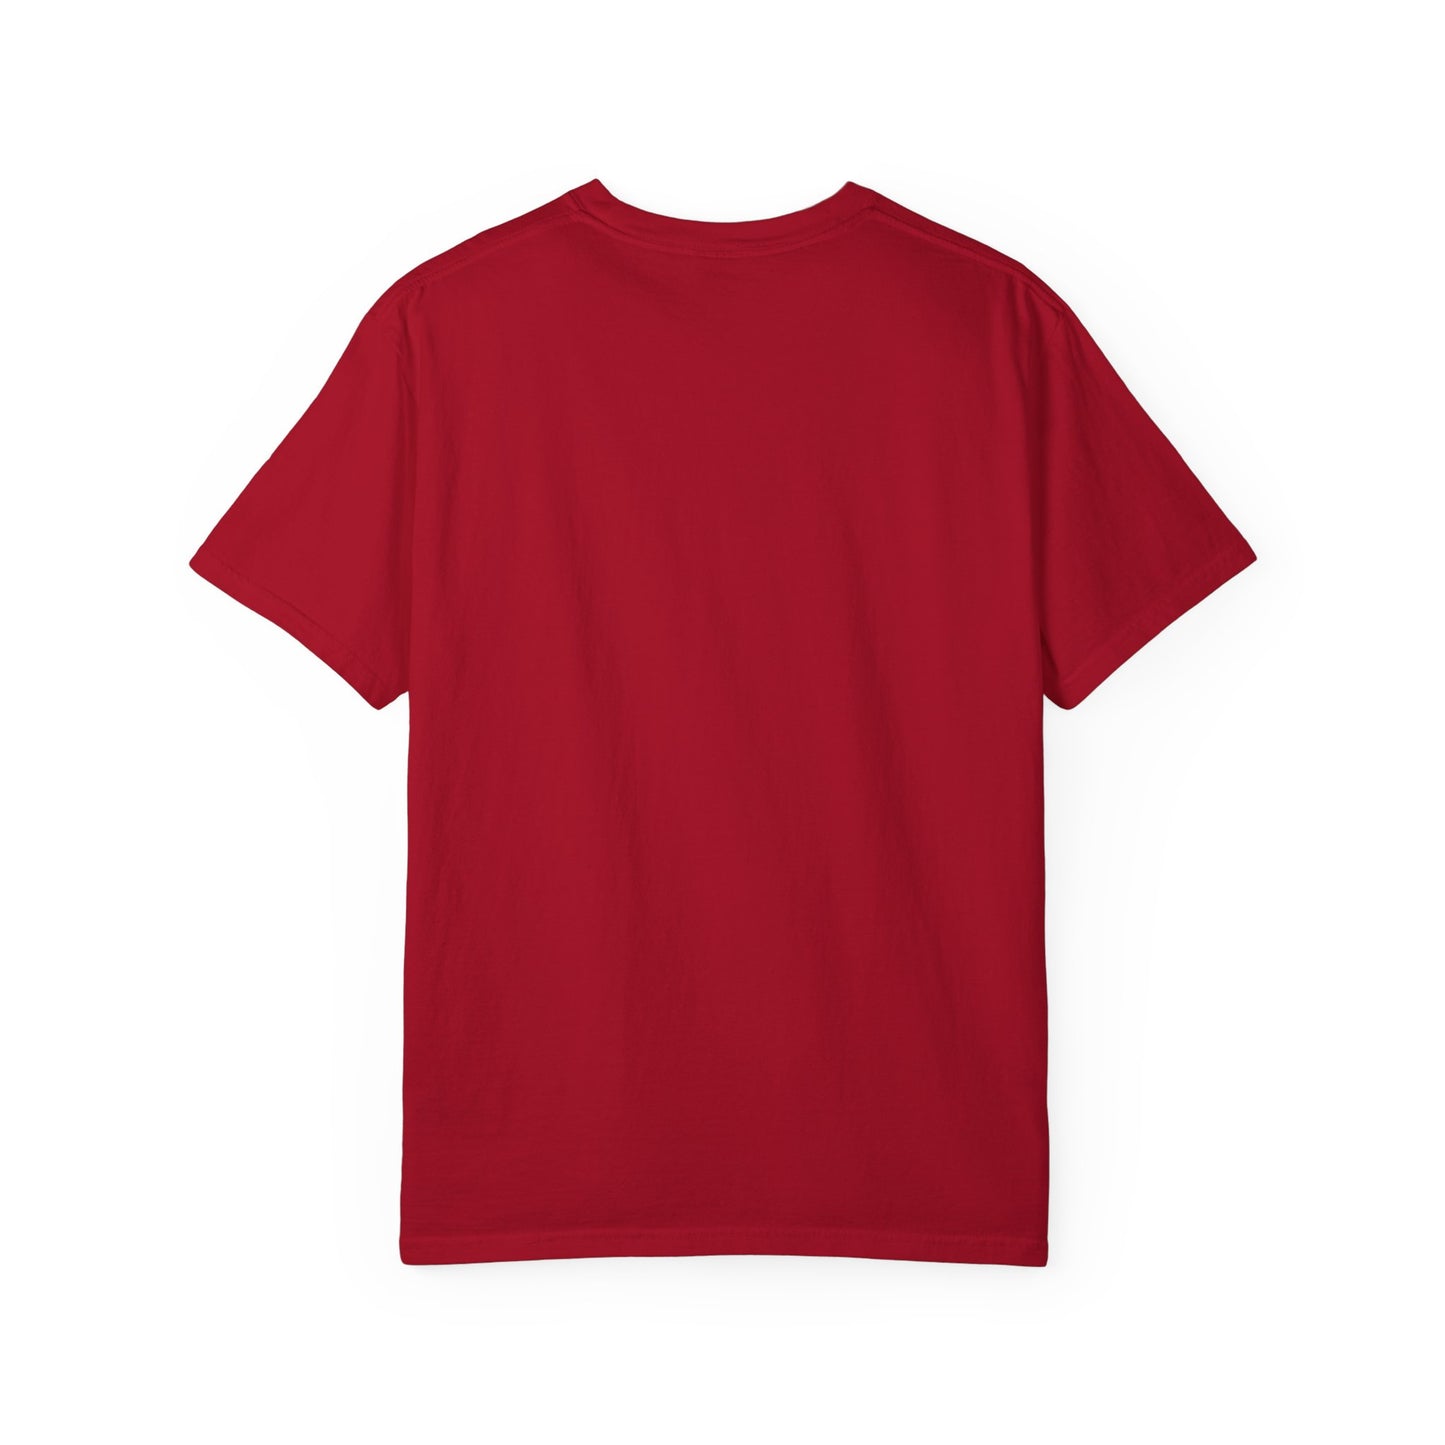 SWARM HOU Unisex Comfort Colors T-shirt